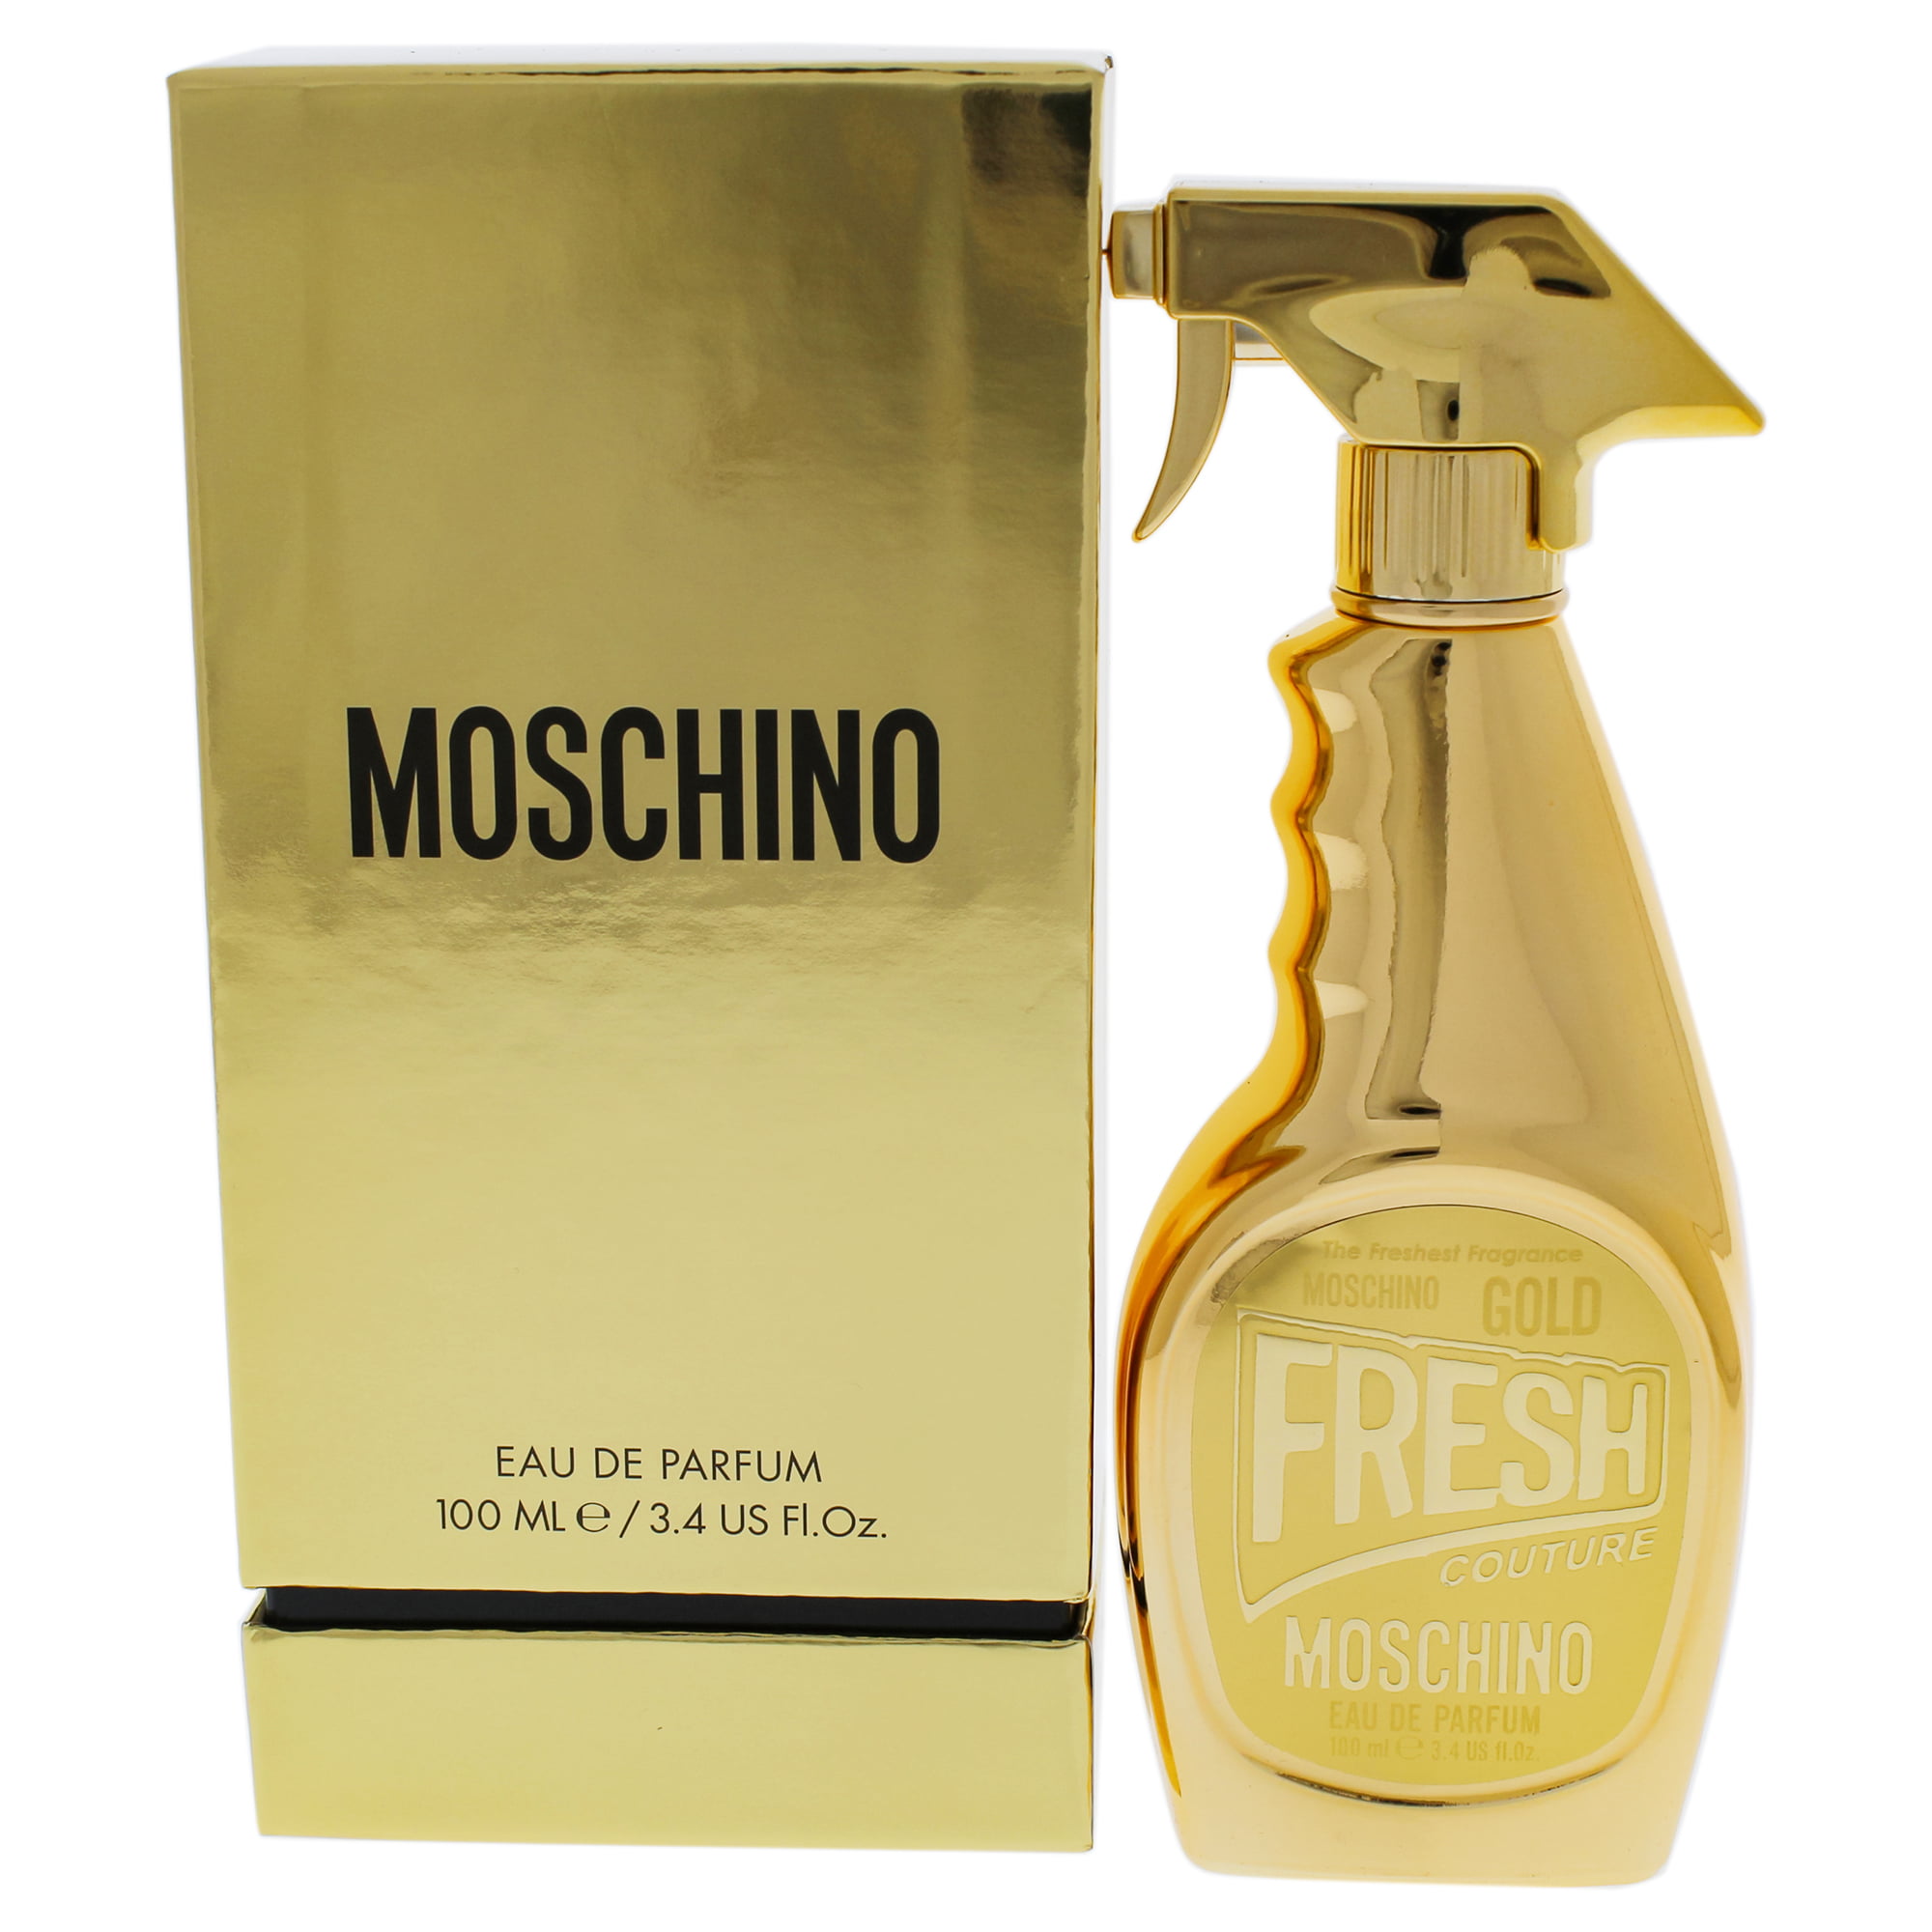 Moschino - Moschino Gold Fresh Couture Eau de Parfum, Perfume for Women